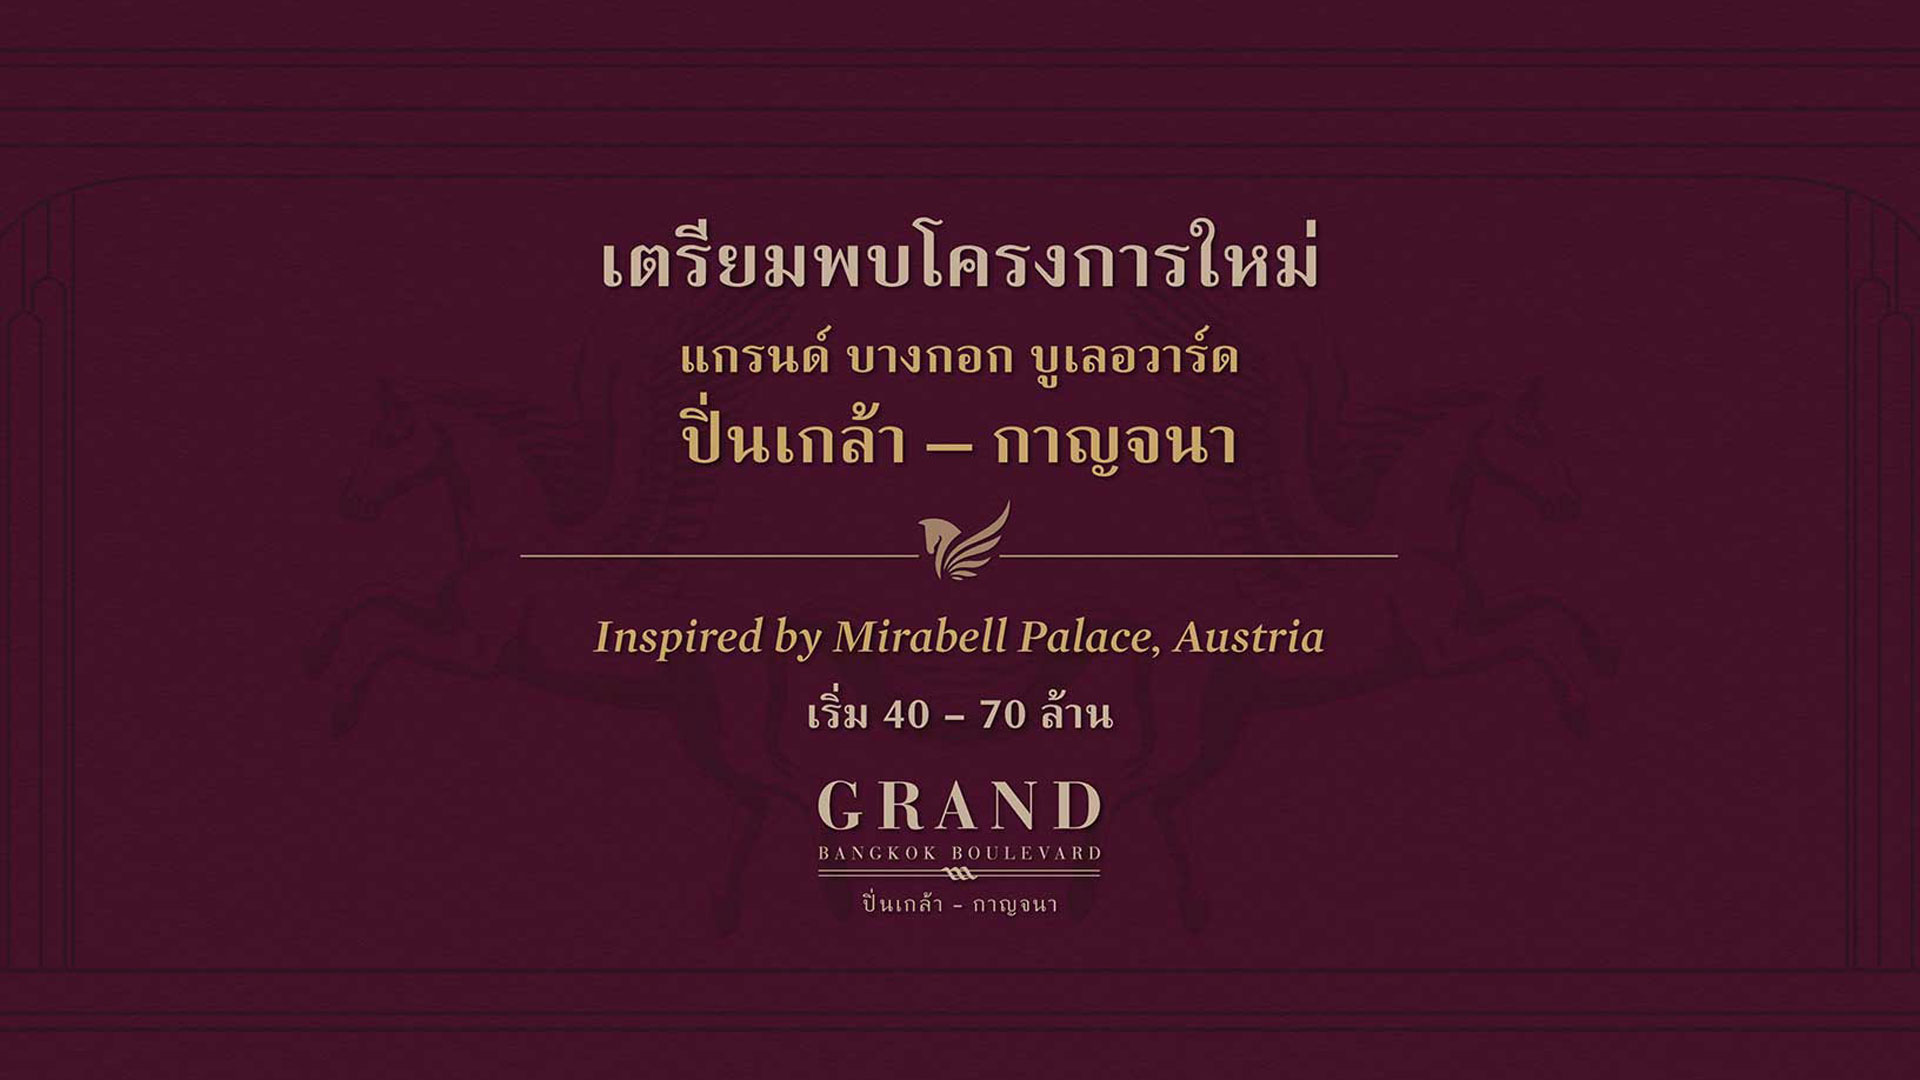 แกรนด์ บางกอก บูเลอวาร์ด ปิ่นเกล้า - กาญจนา (Grand Bangkok Boulevard Pinklao - Kanchana) : ภาพที่ 2